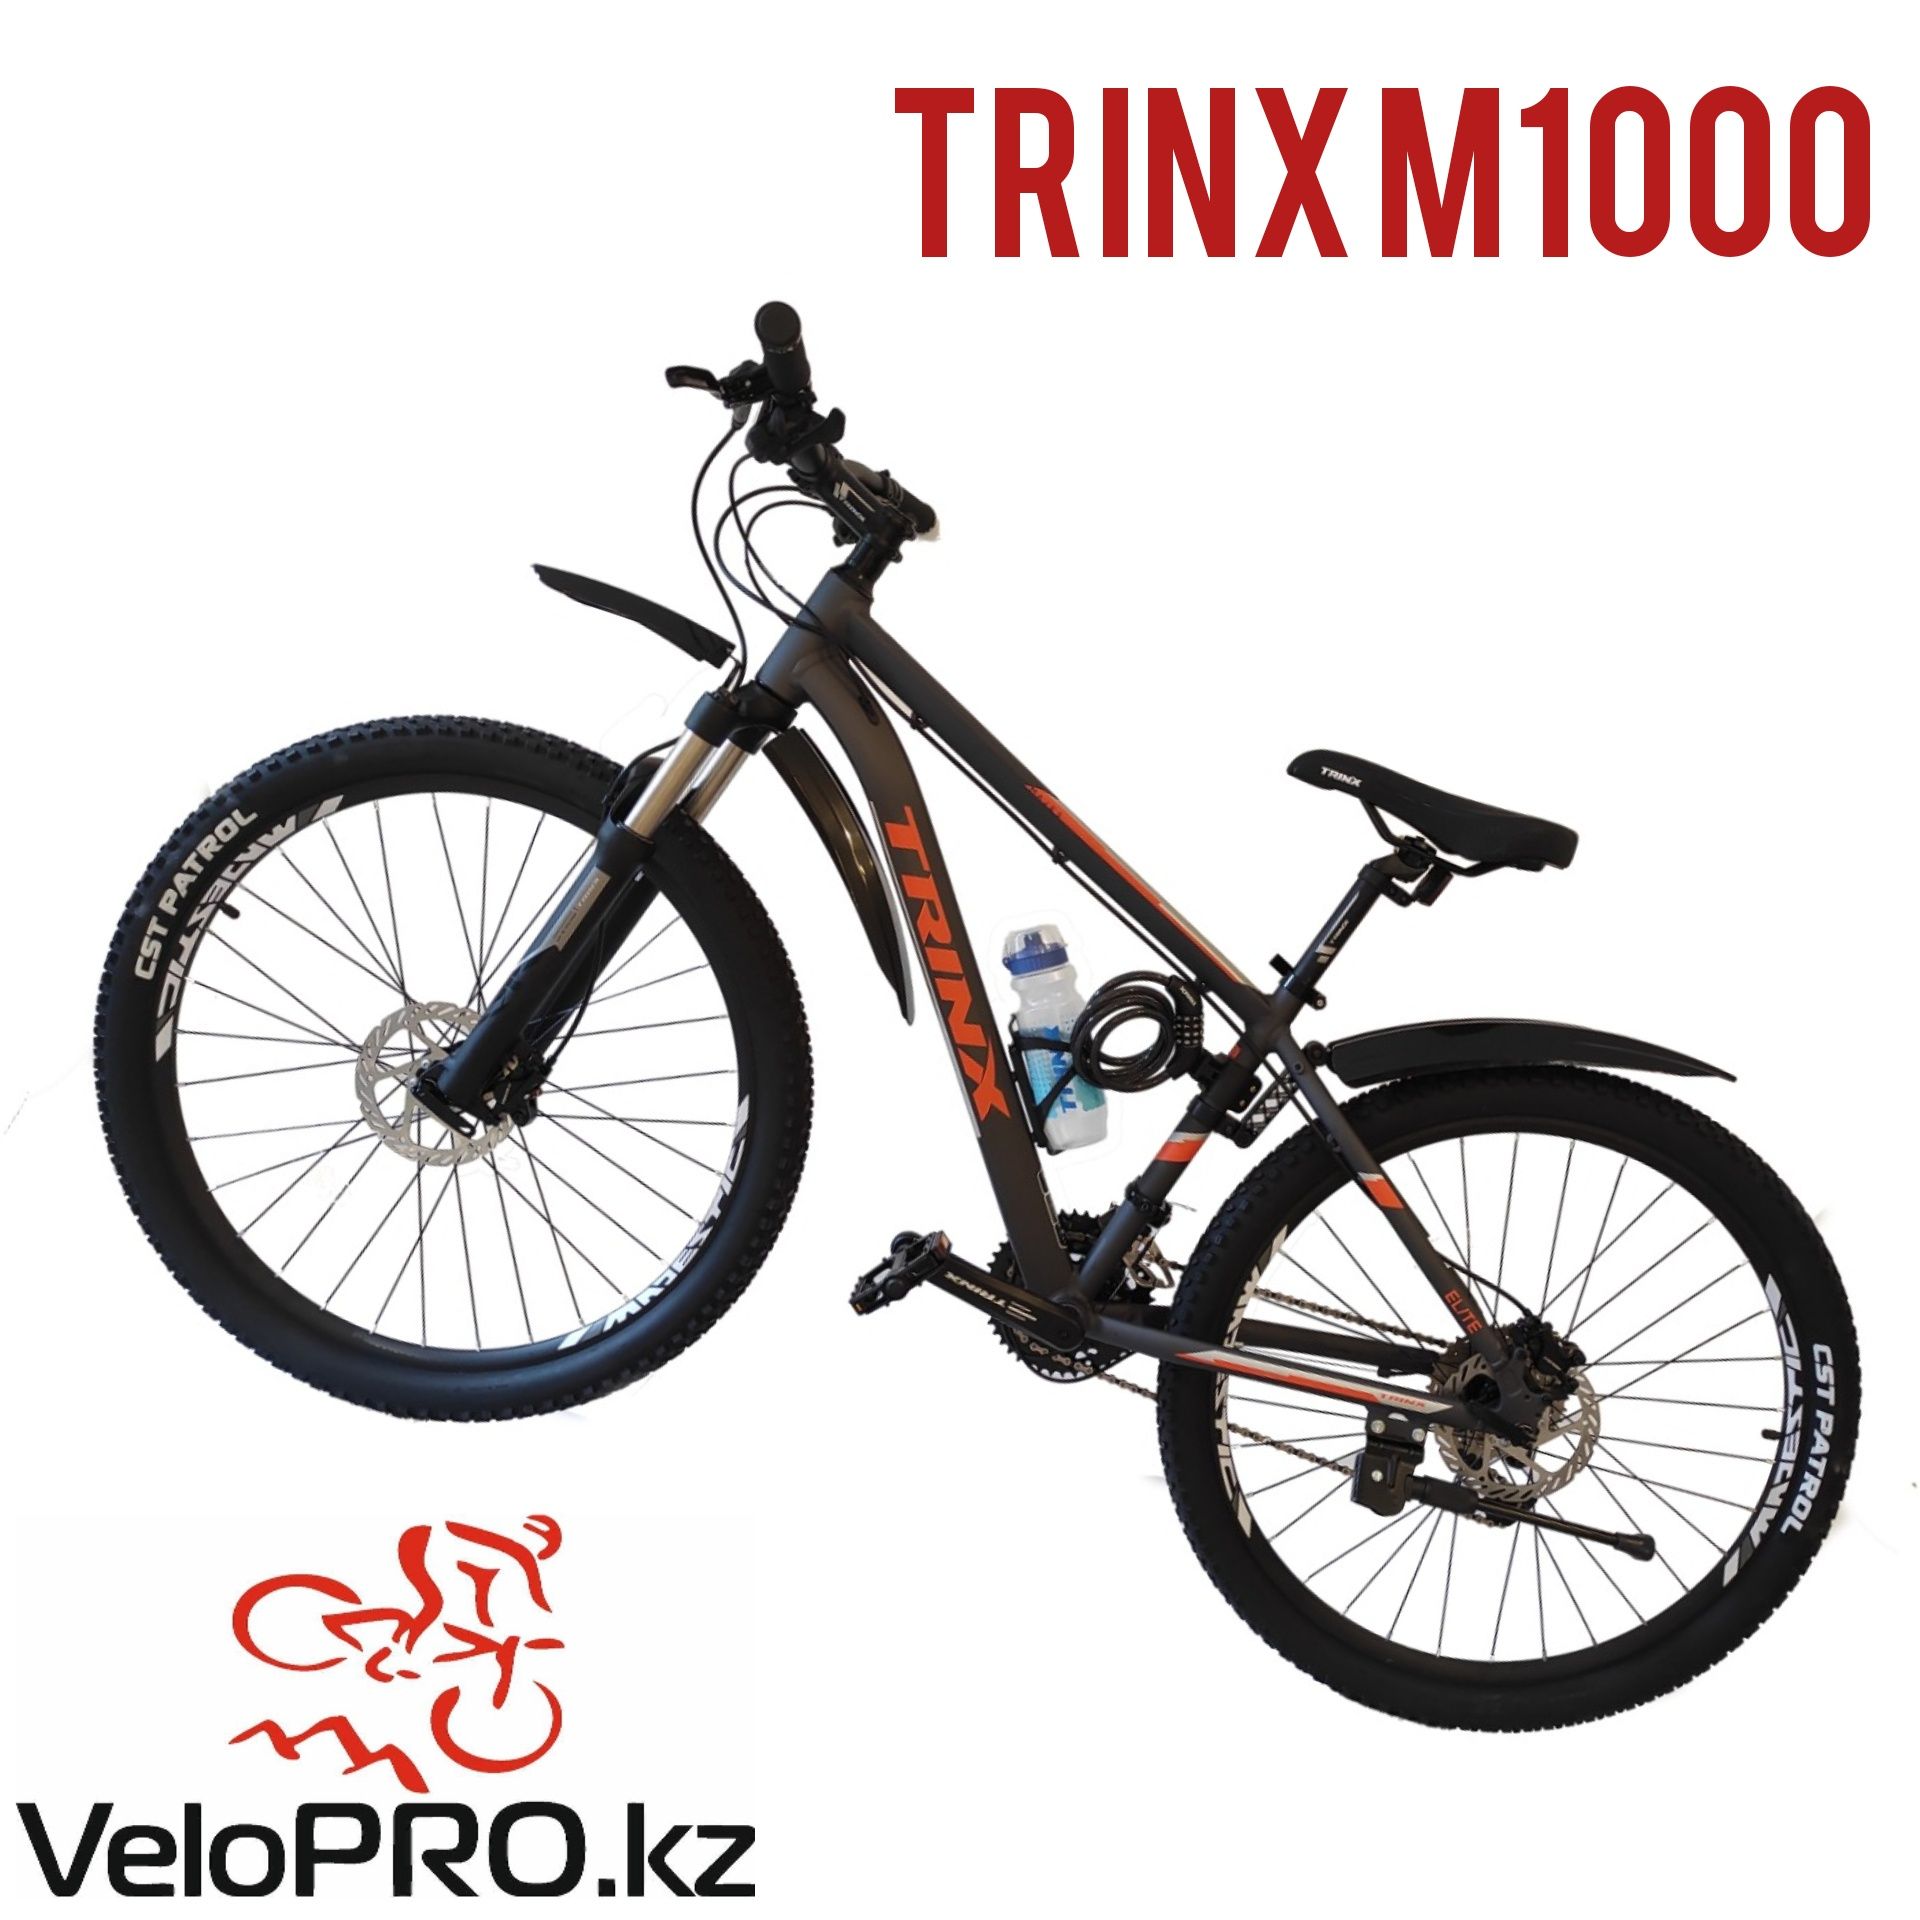 Велосипед Trinx m1000. (Тринкс м1000). Рама 16 и 21". Колеса 29".